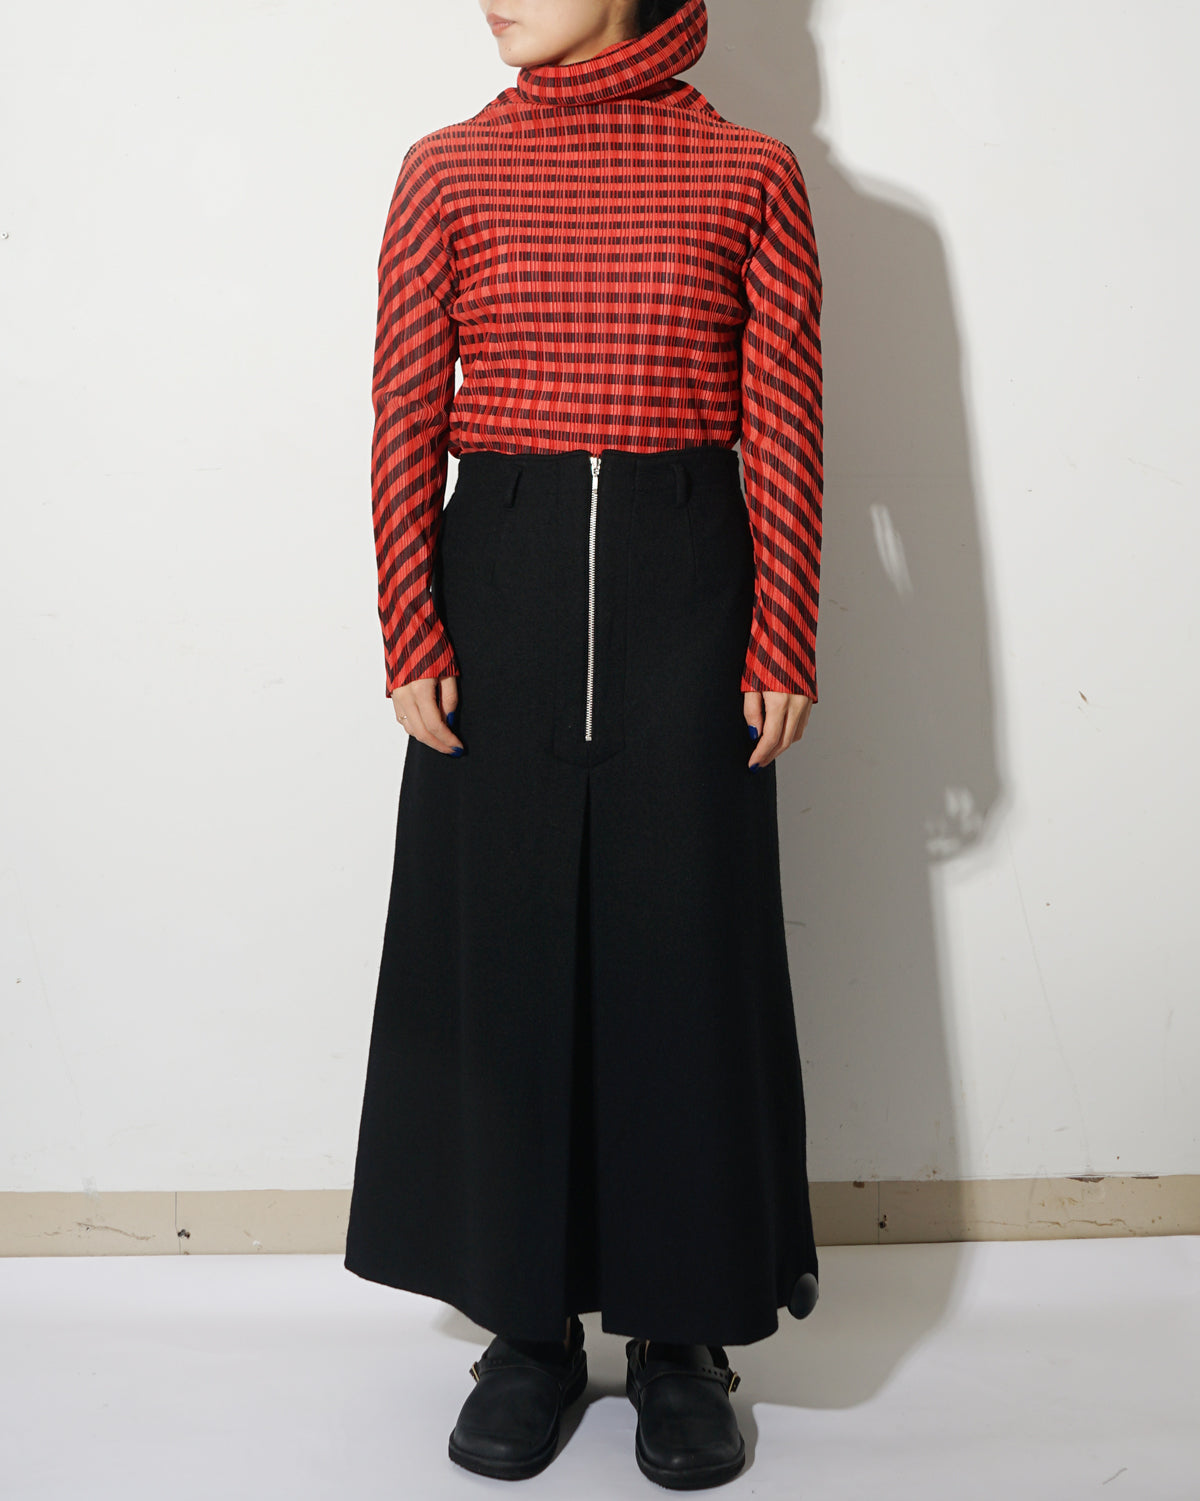 I.S Wool Skirt